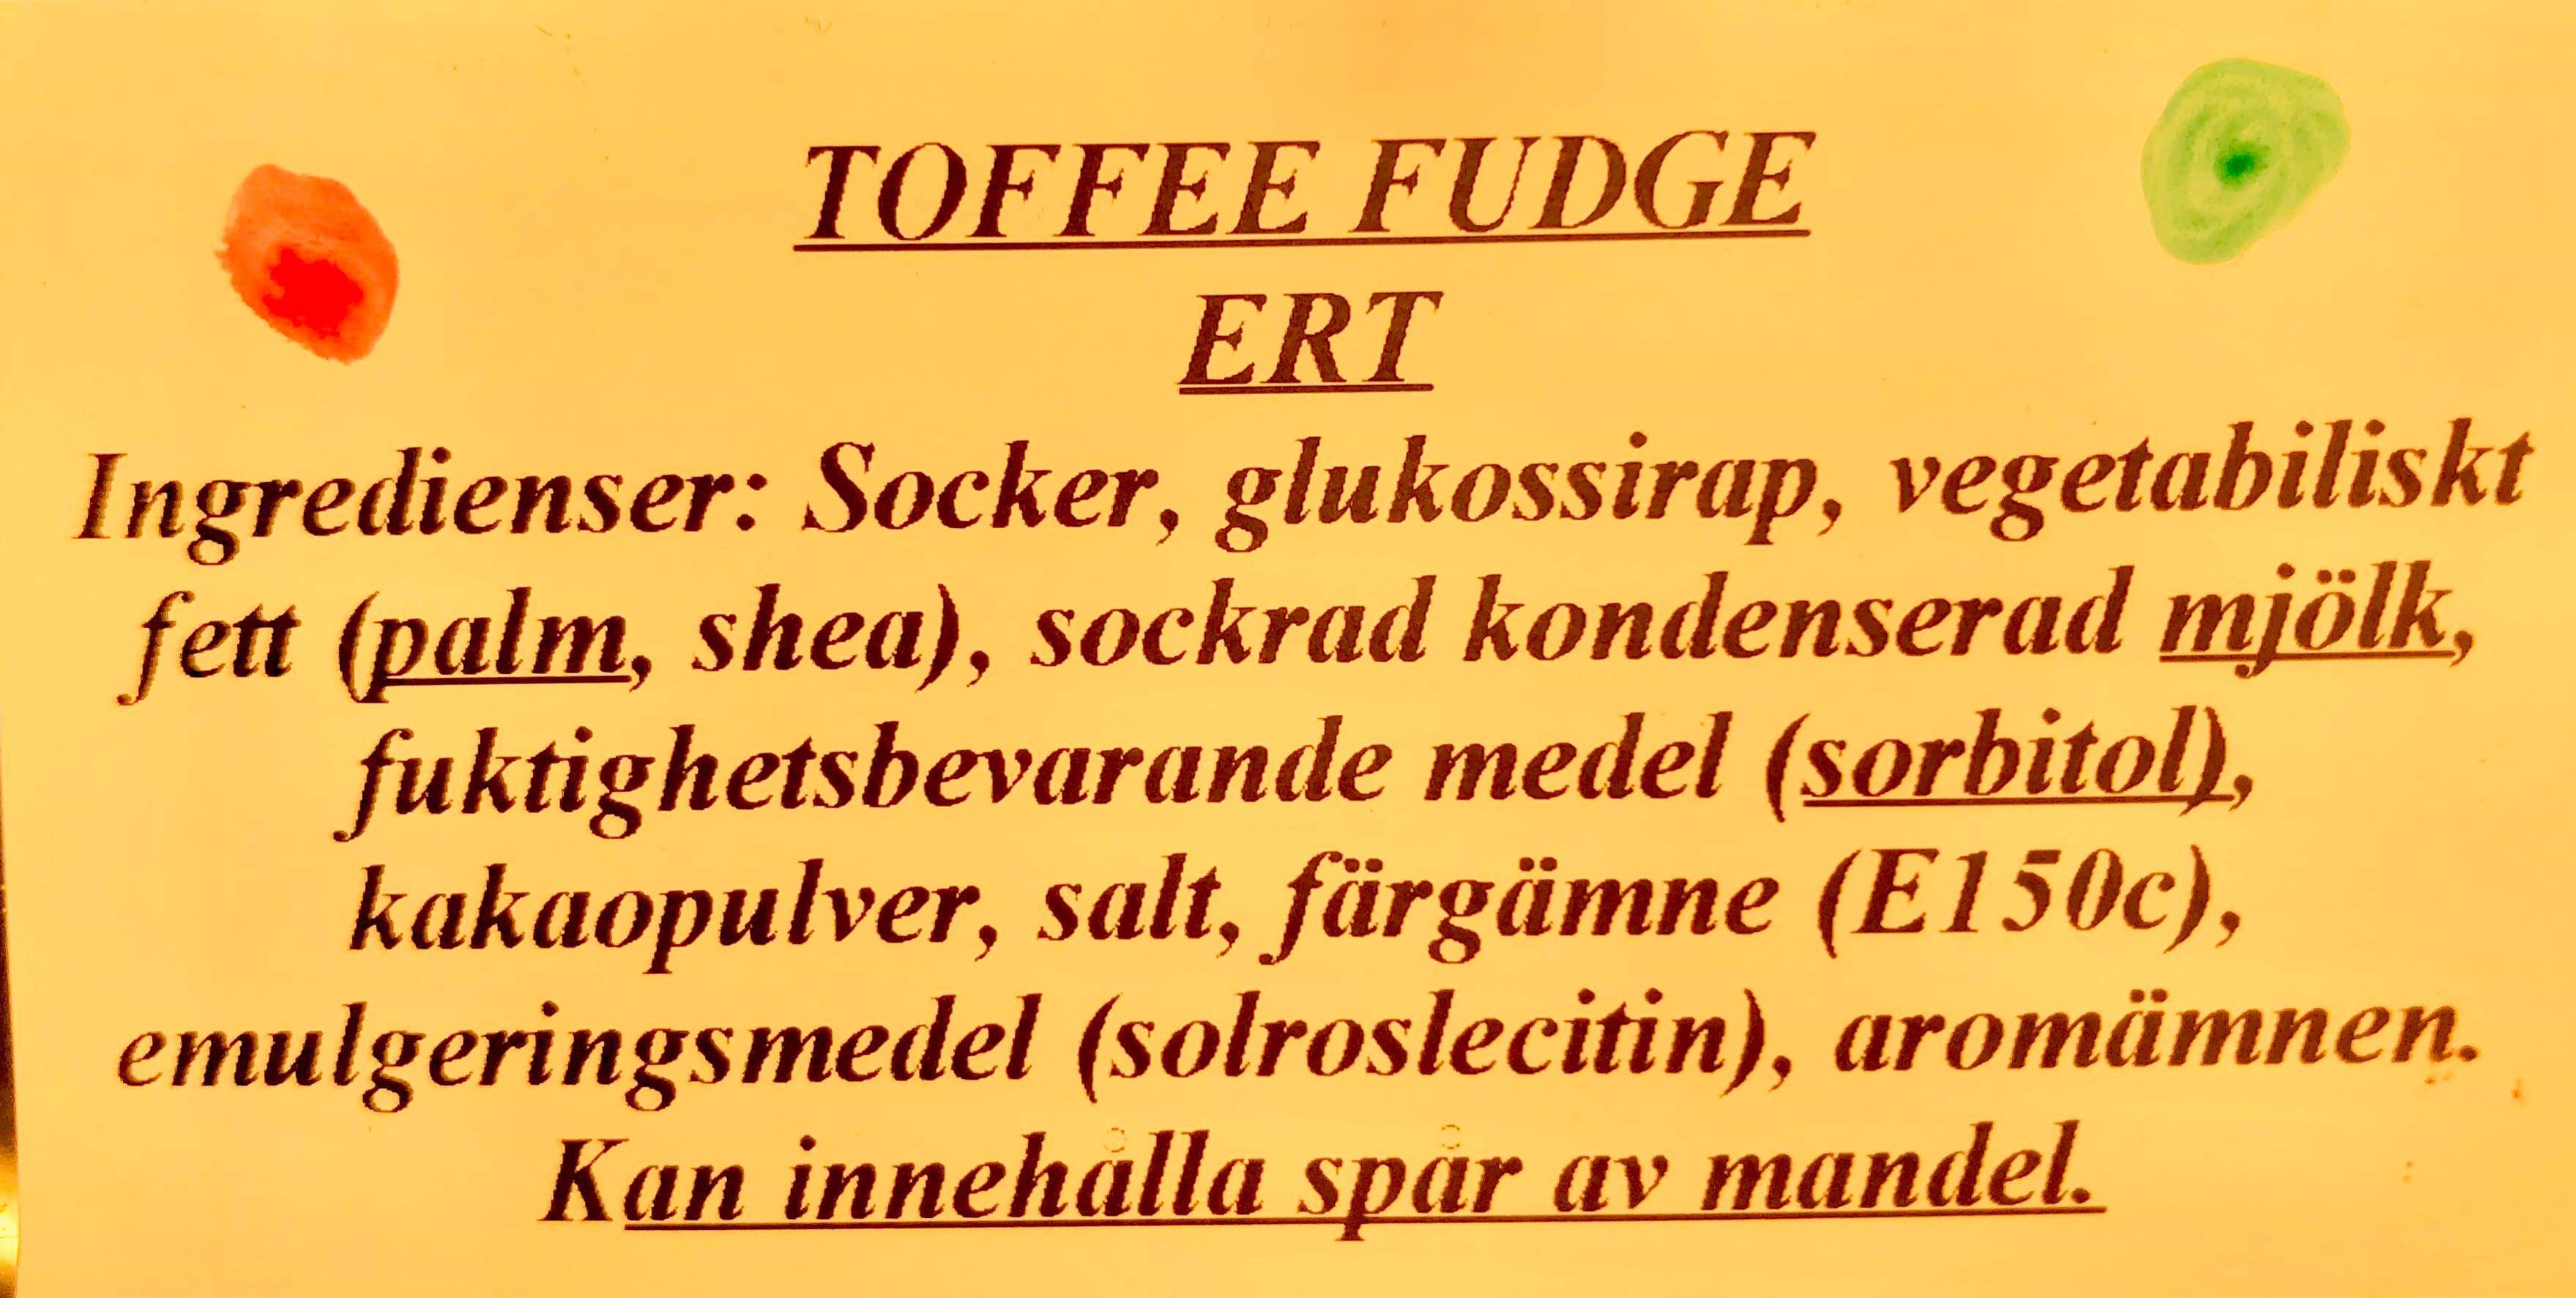 Toffeefudge